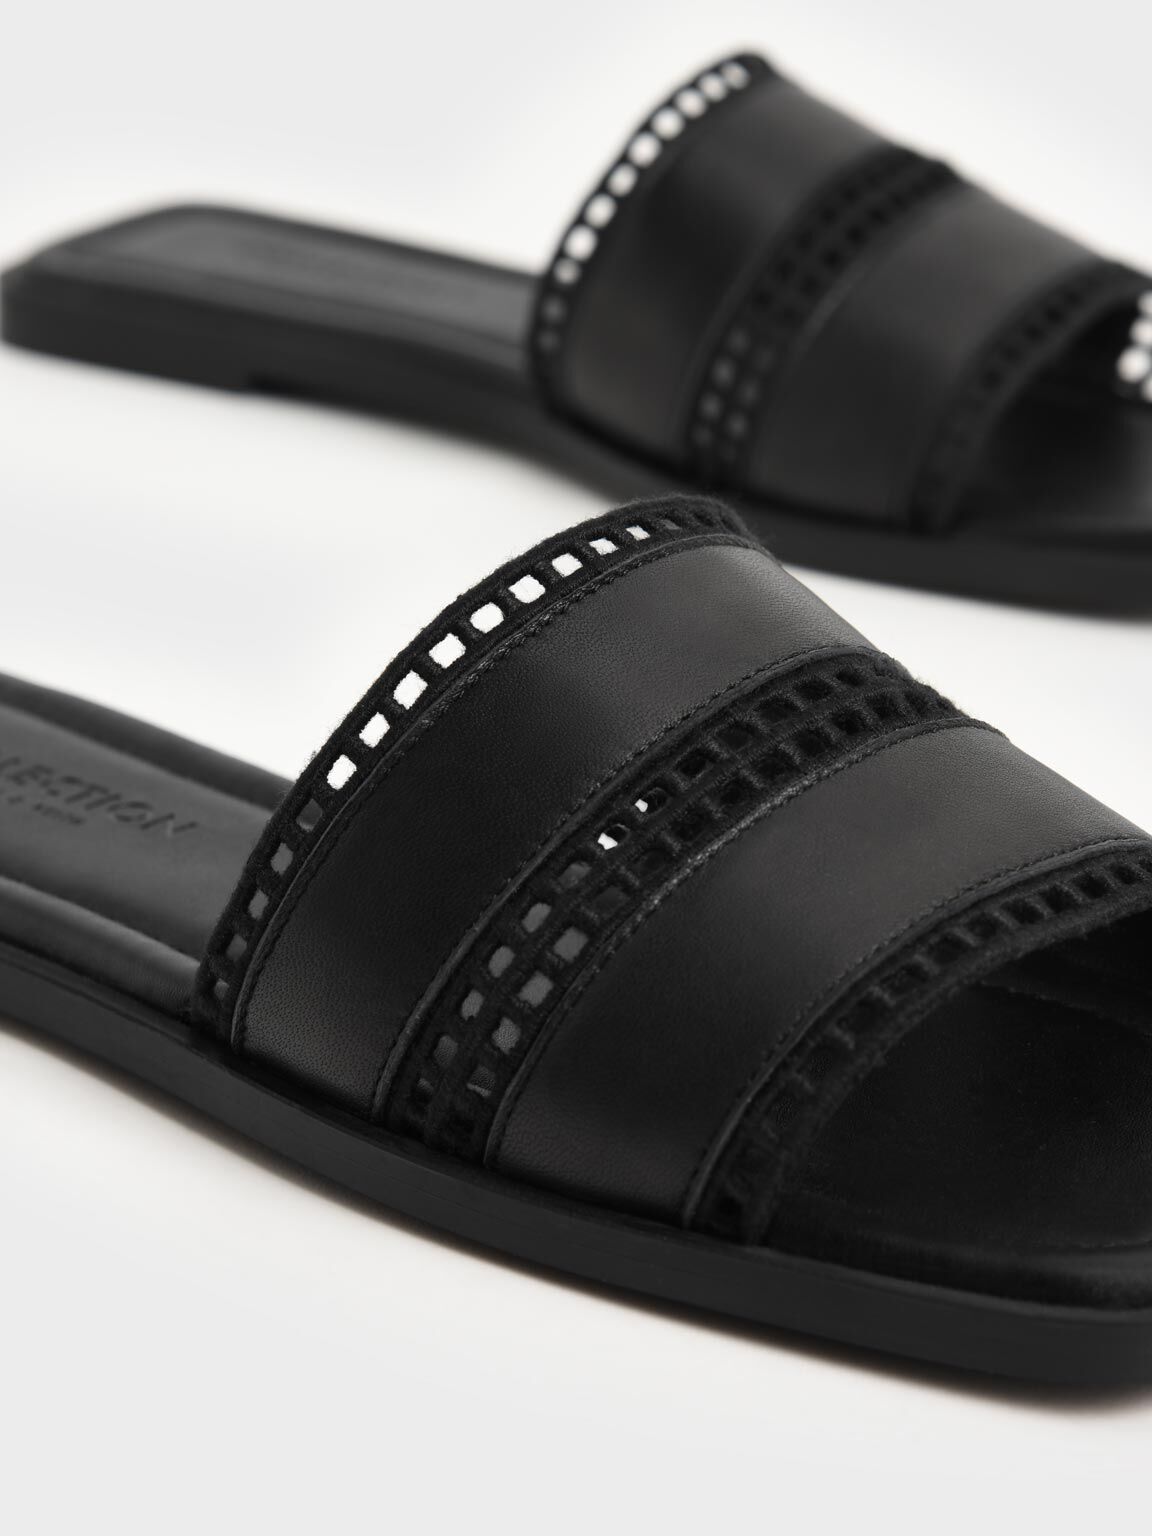 Sandal Slides Cut-Out Square-Toe, Black, hi-res